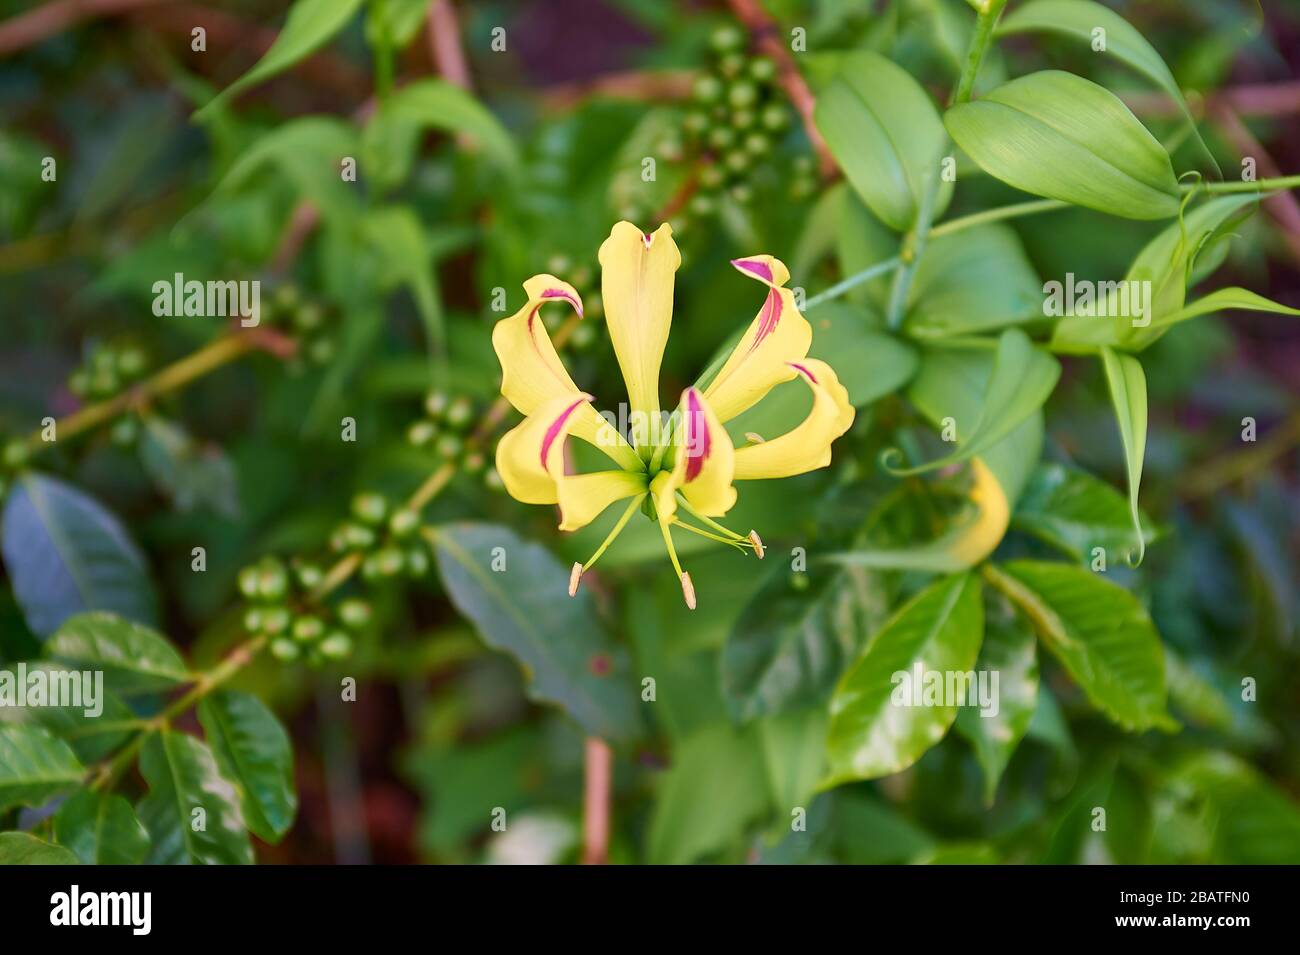 La flor Gloriosa superba en África a menudo crece en simbiosis con plantas delicadas cultivadas, como el café Foto de stock